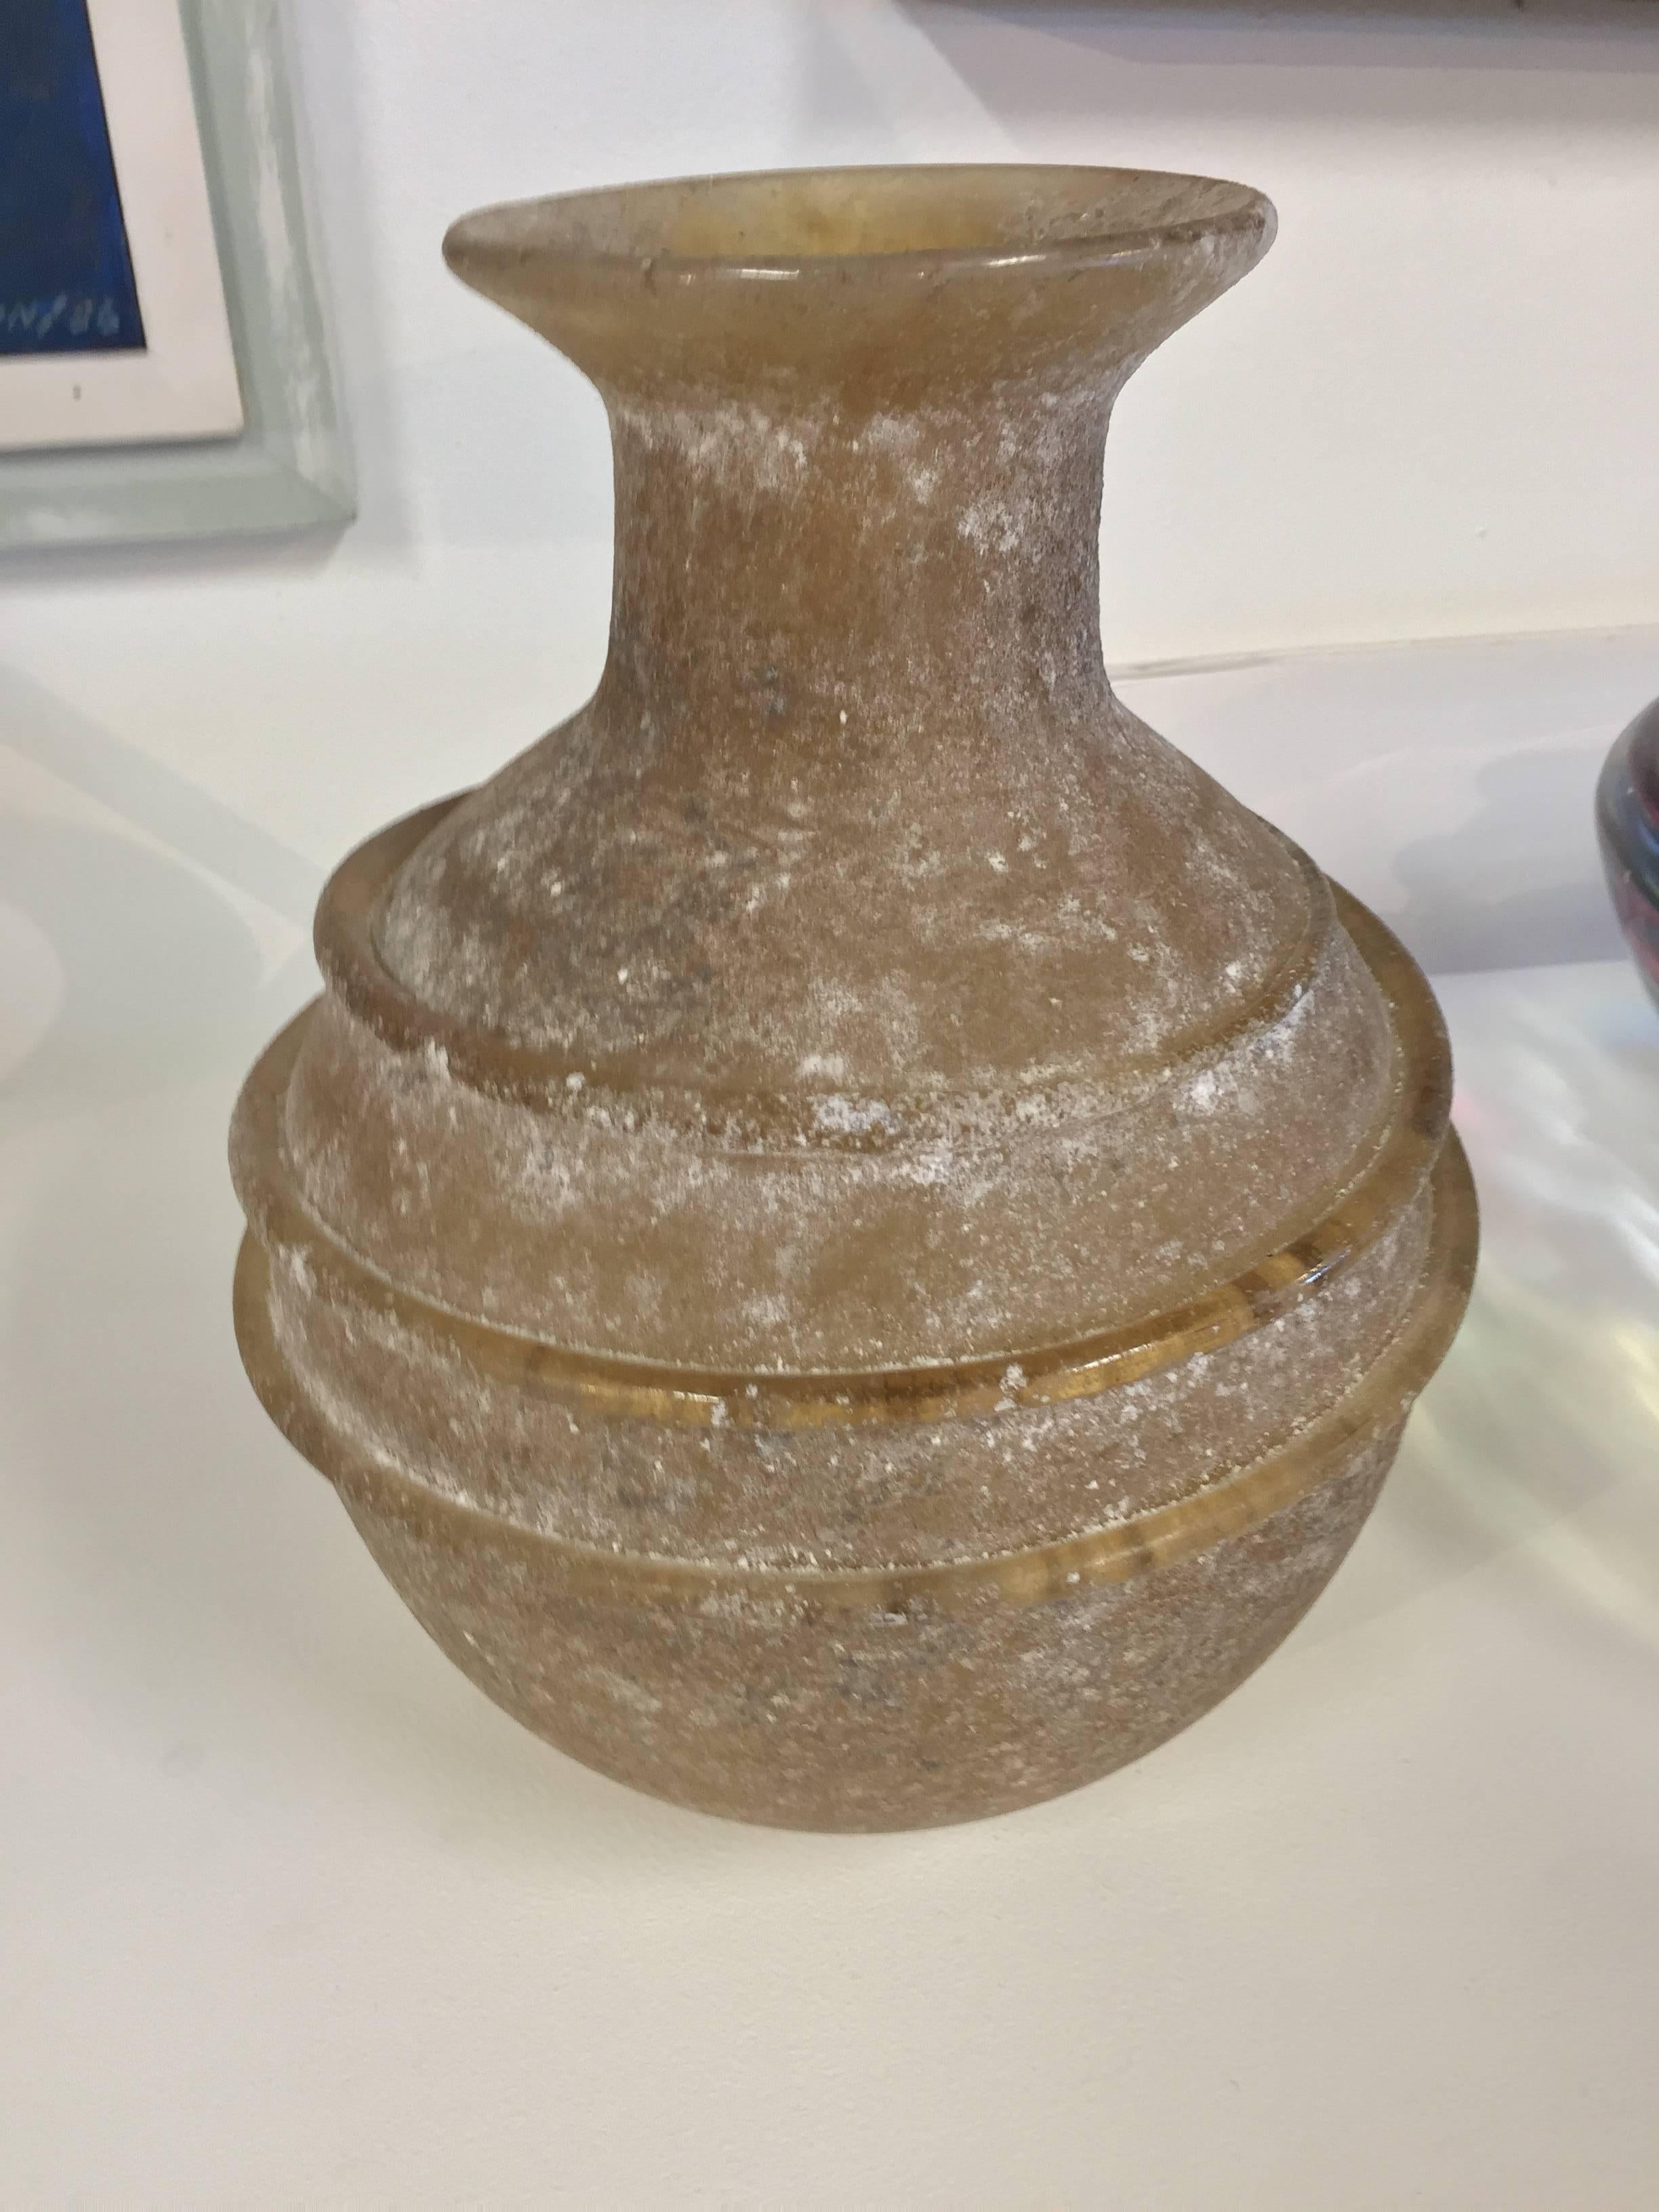 Magnifique vase Scavo ou corroso soufflé à la main avec des nervures en spirale. 
Non signé.